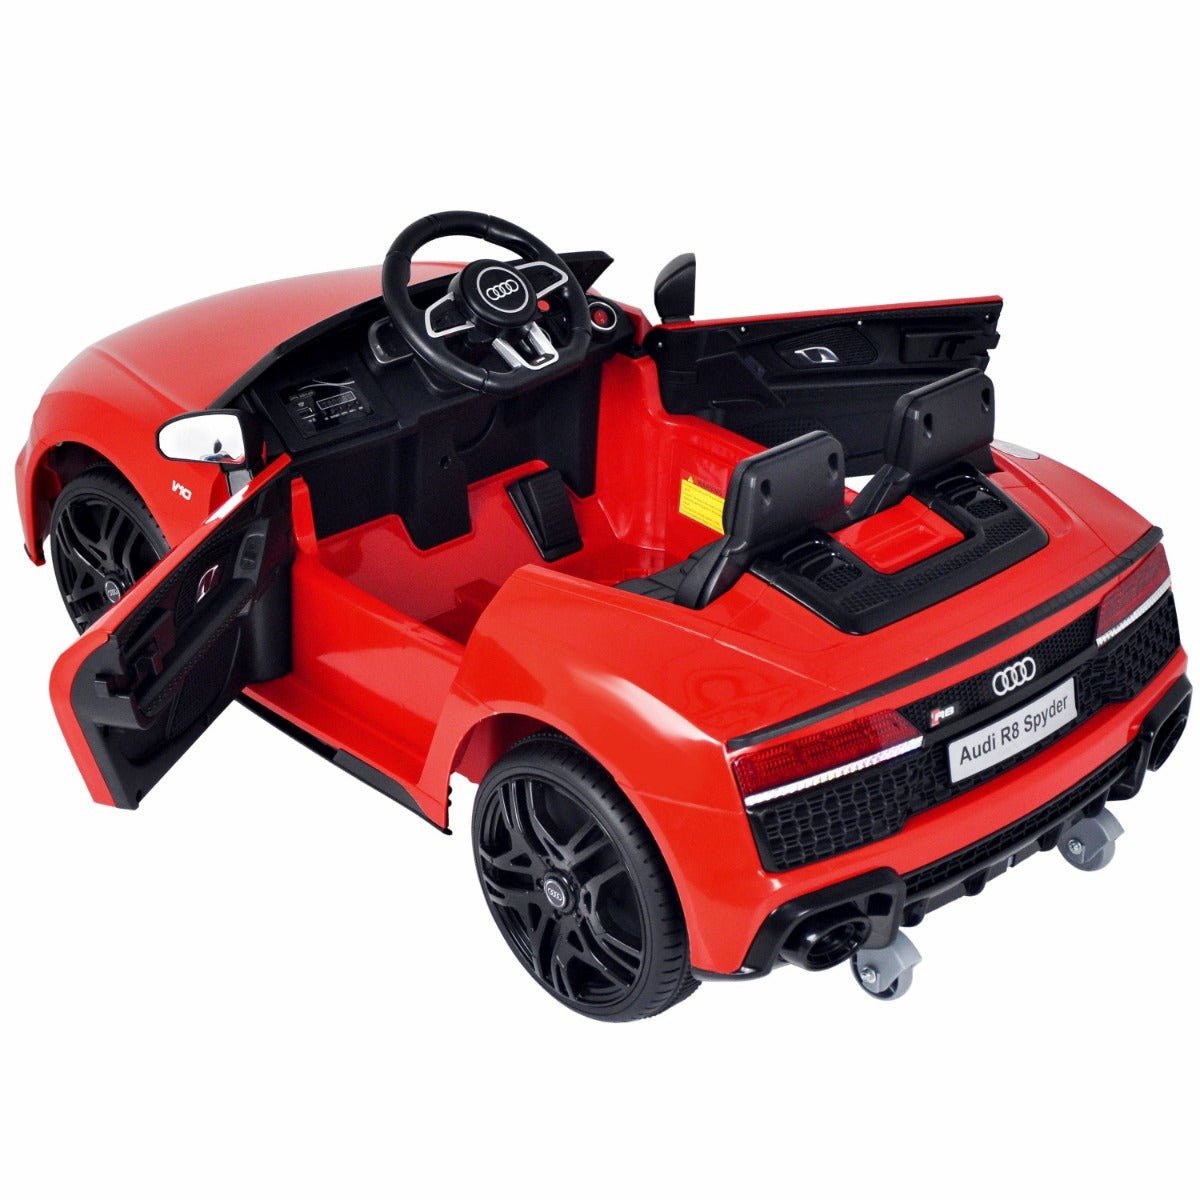 Latest 2020 Model Licensed Audi R8 Spyder 12V Children’s Ride On Car